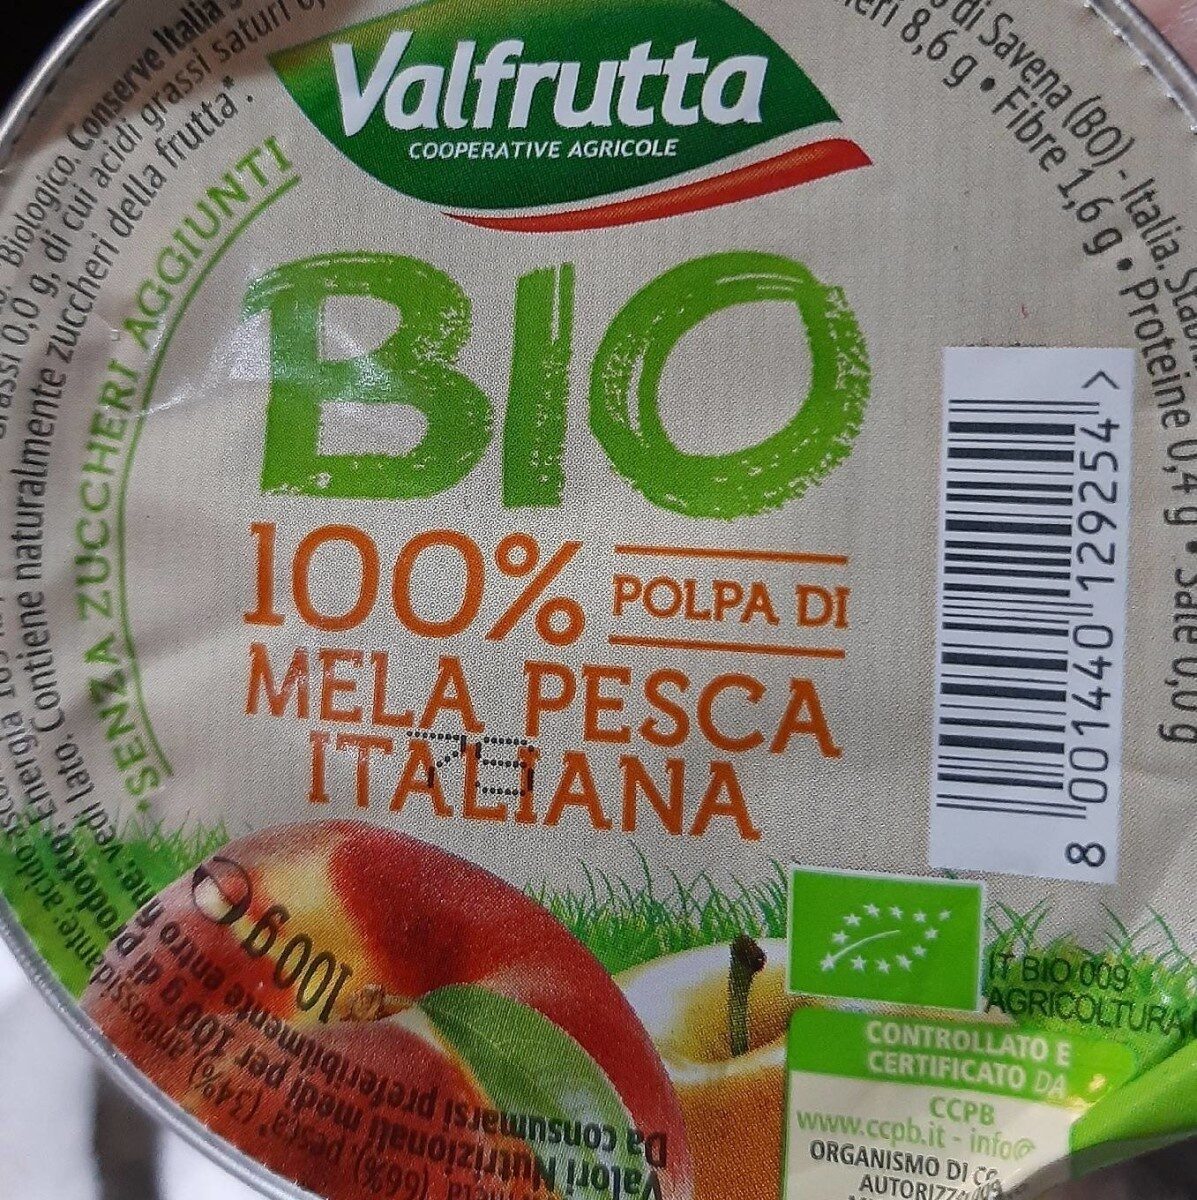 100% Mela pesca italiana - Product - it